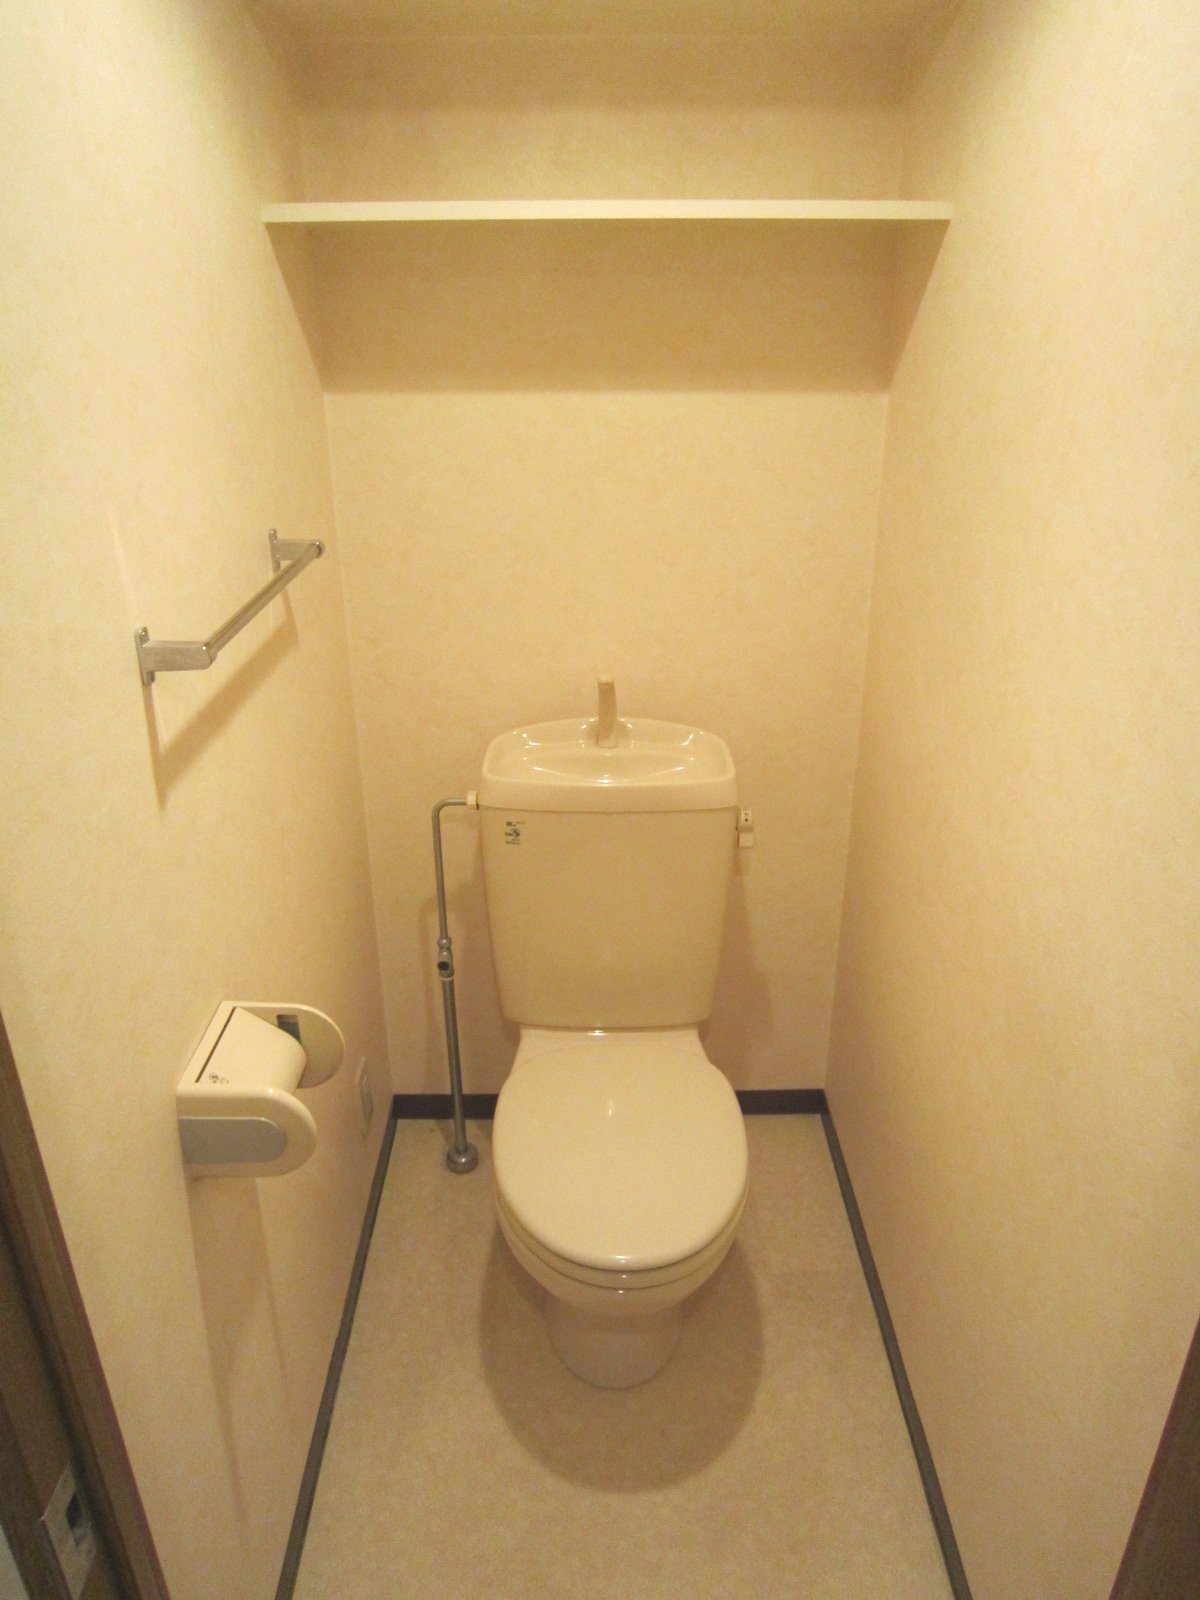 Toilet. With storage shelf